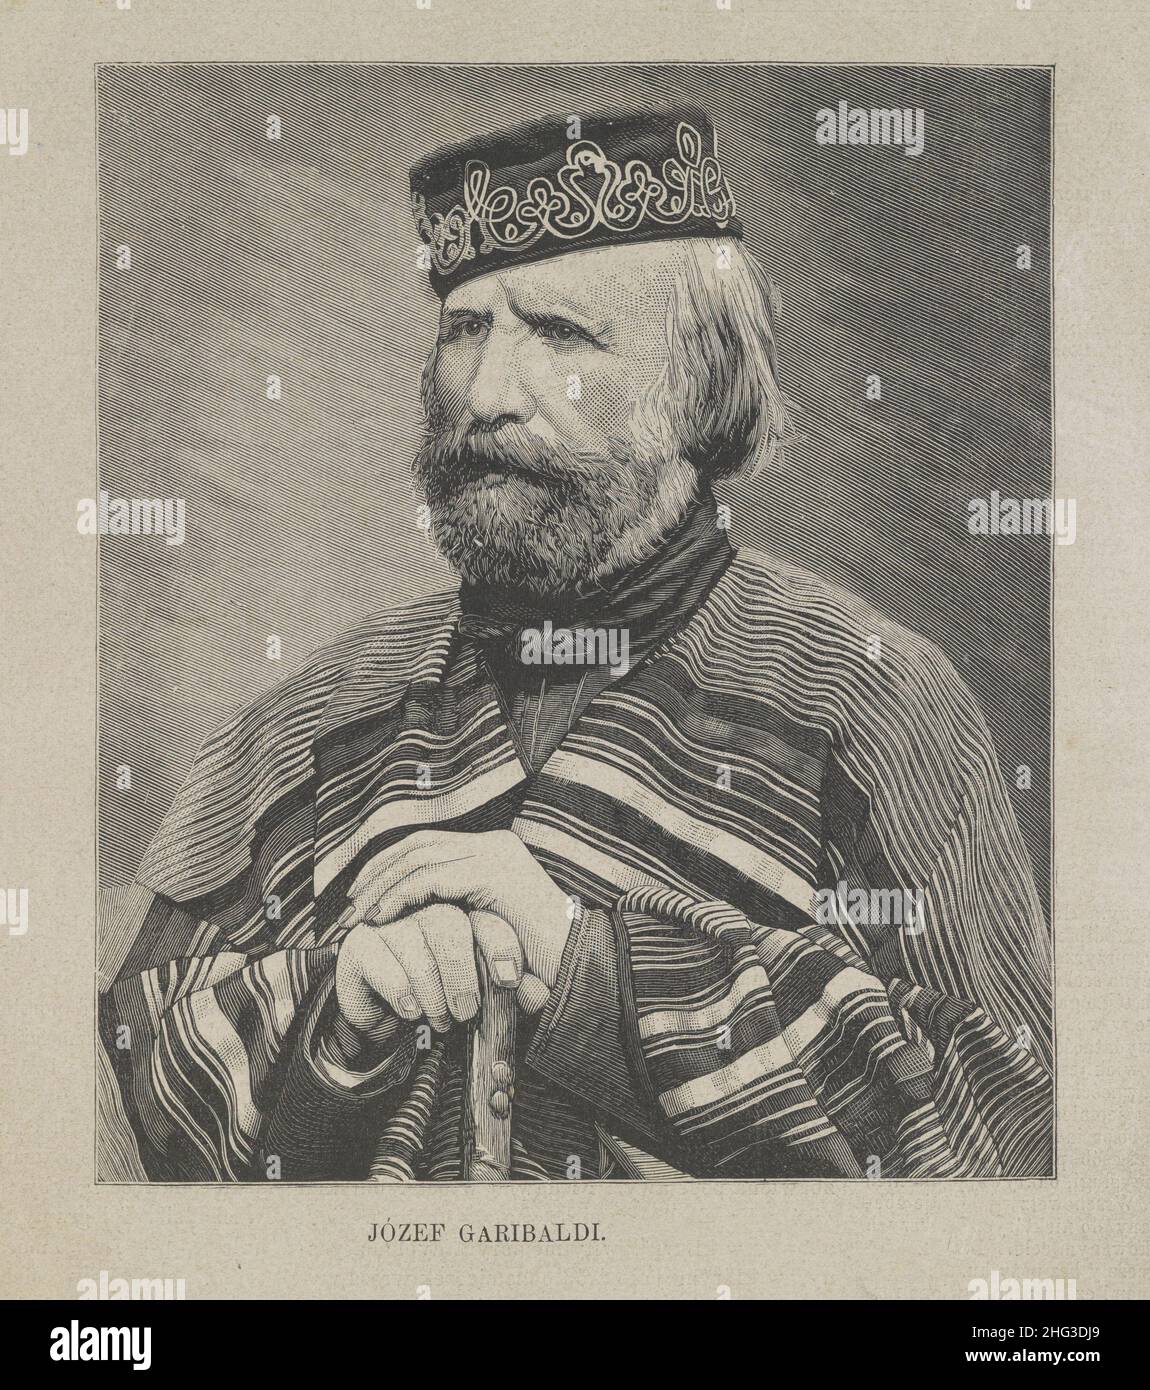 Portrait de Giuseppe Garibaldi.Giuseppe Maria Garibaldi (1807 – 1882) était un général, patriote et républicain italien.Il a contribué à l'italien U. Banque D'Images